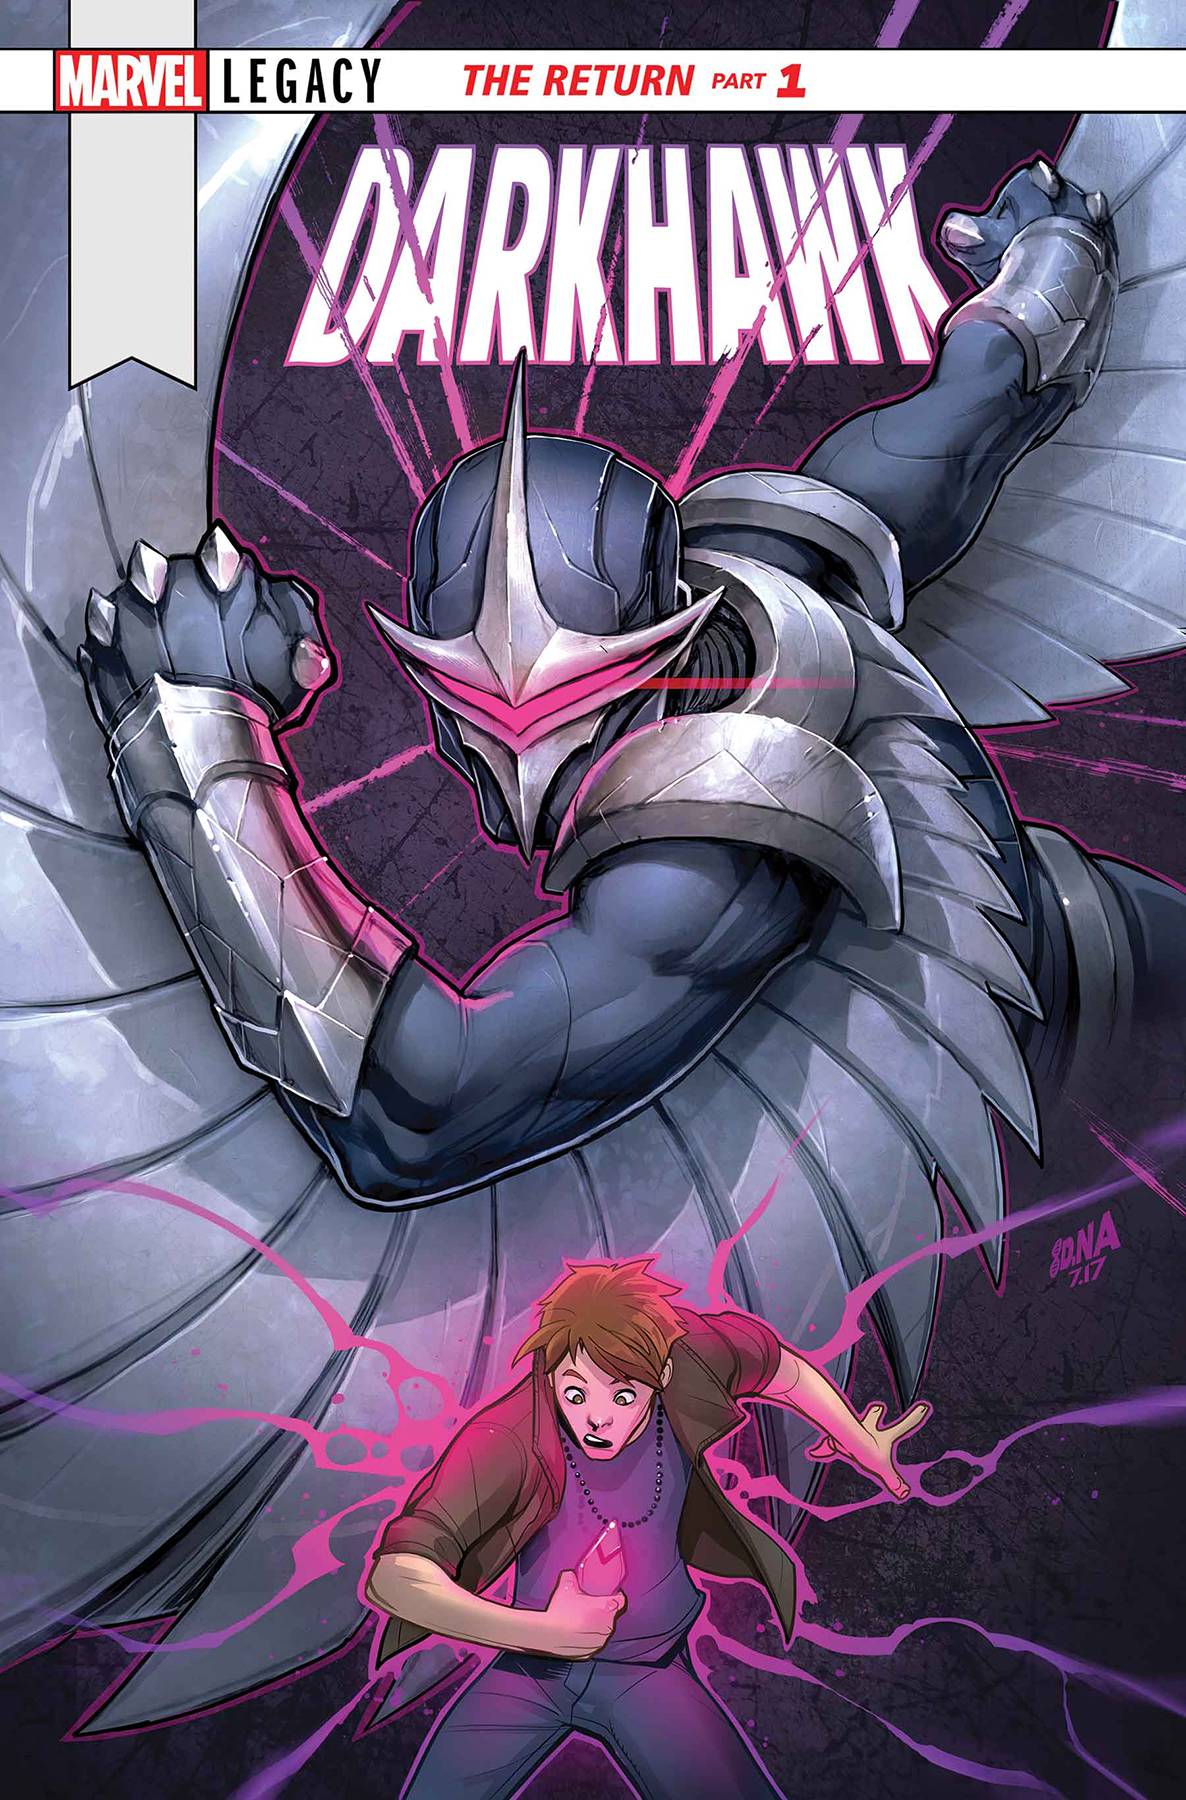 Darkhawk #51 Legacy